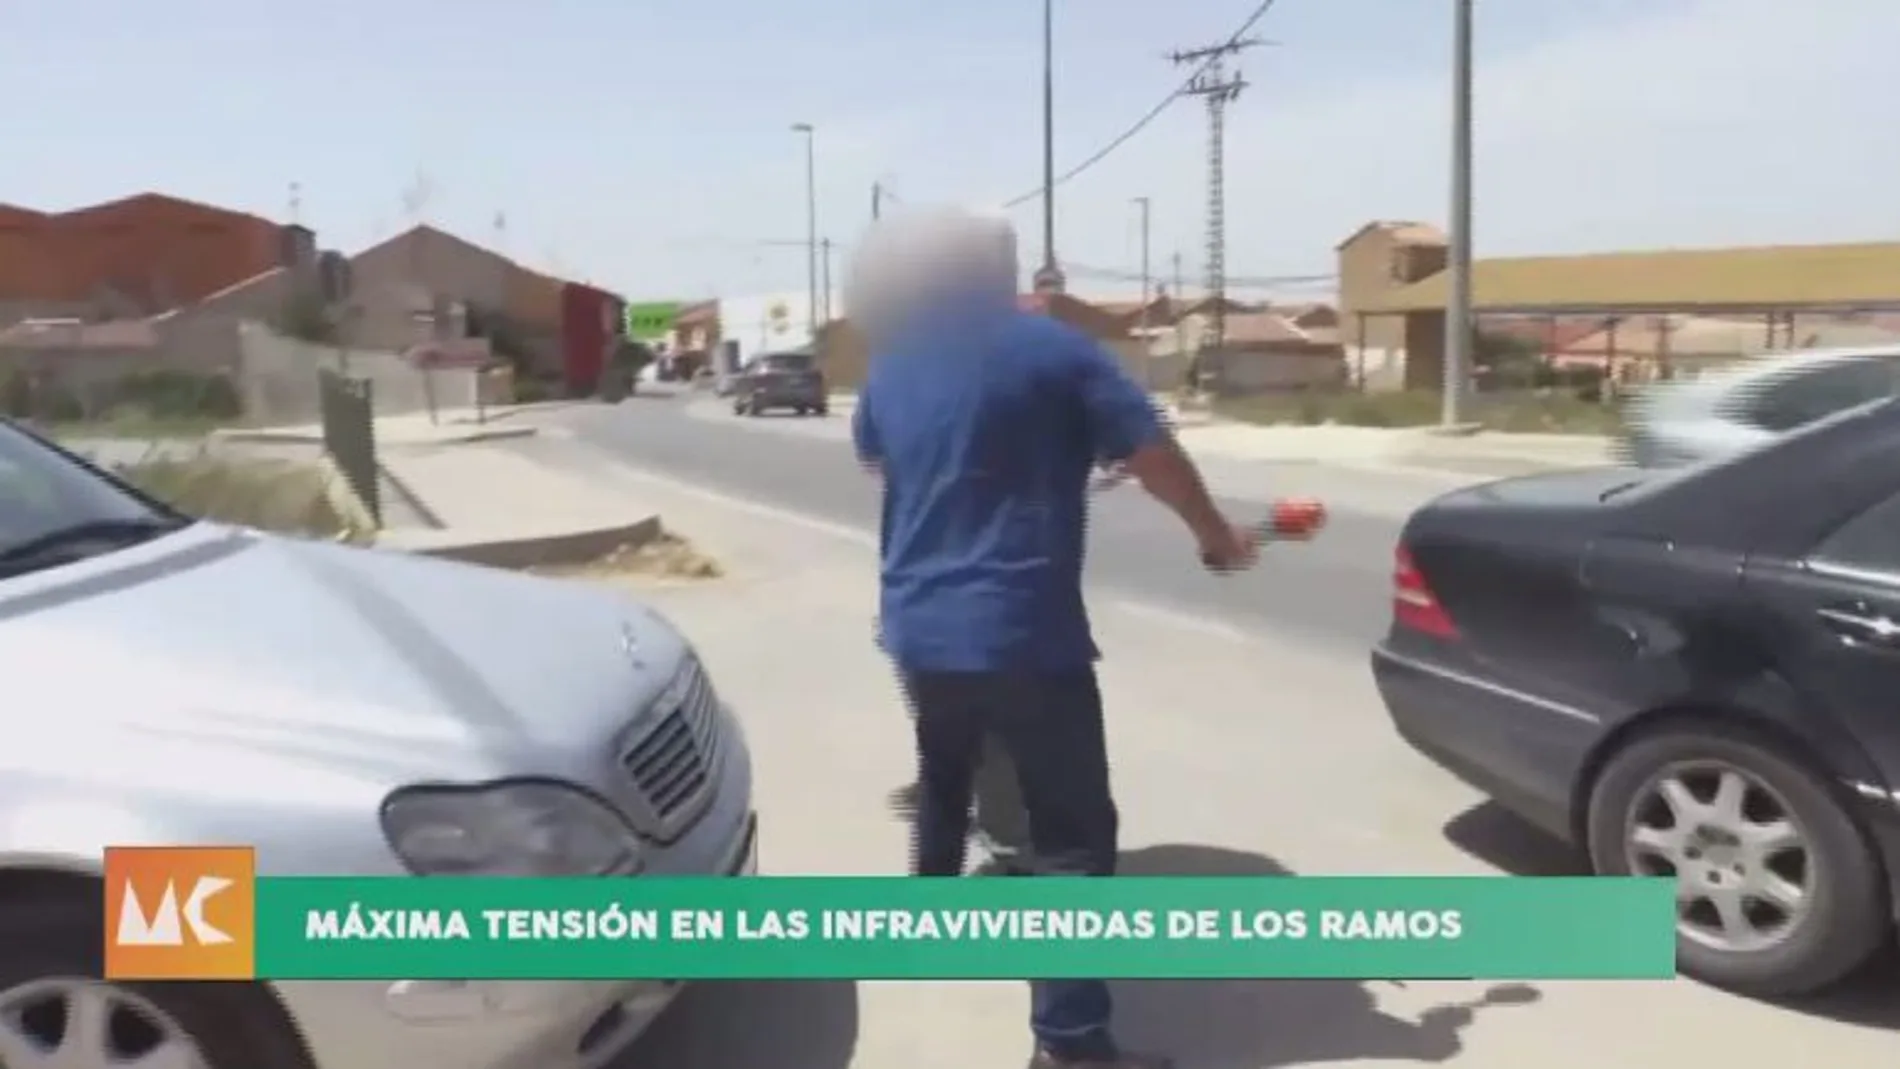 «Sois unos embusteros, mierderos...», dijo furioso el hombre, quien agredió brutalmente en el cuello a Paco García, reportero de 7TV y del programa «Murcia Conecta»